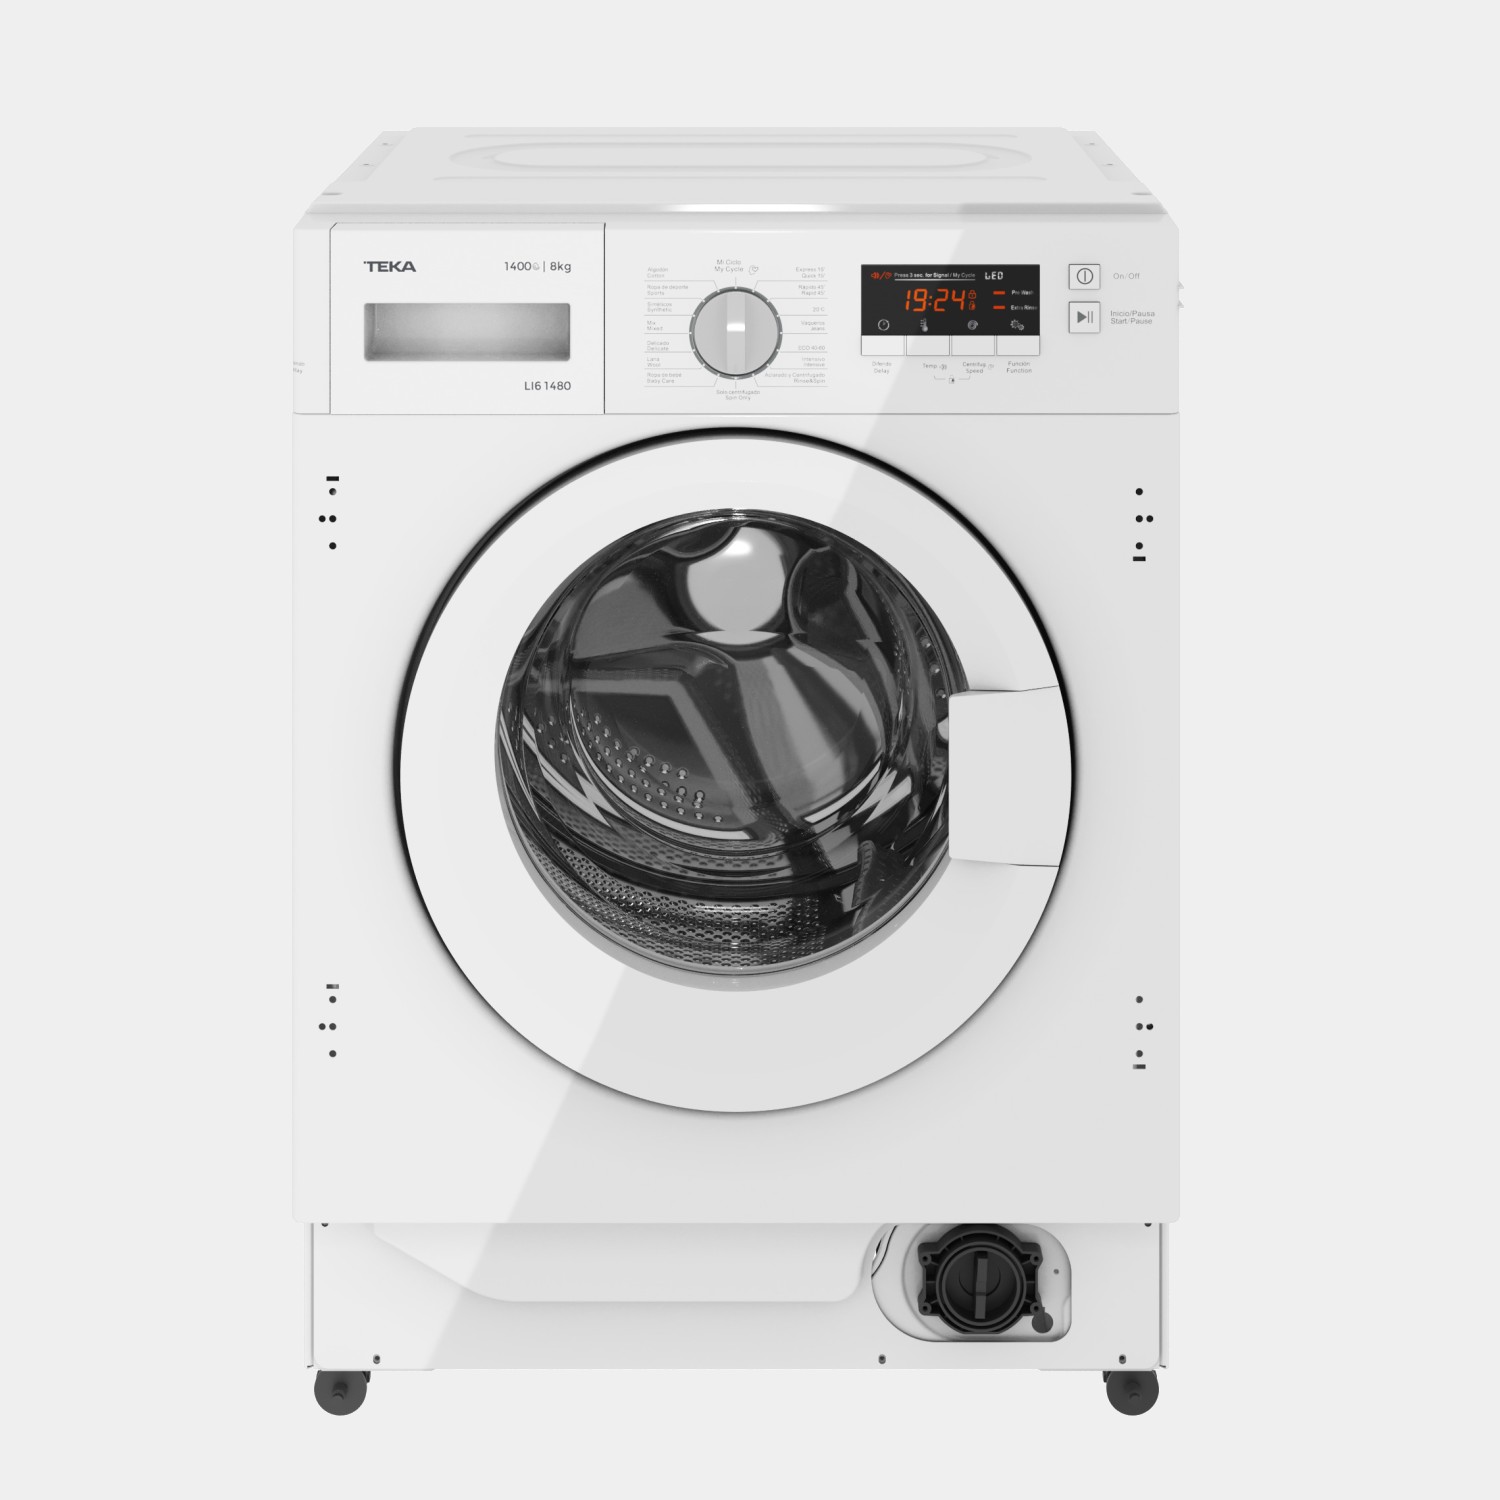 Teka Li61480 lavadora integrable de 8kg 1400rpm B